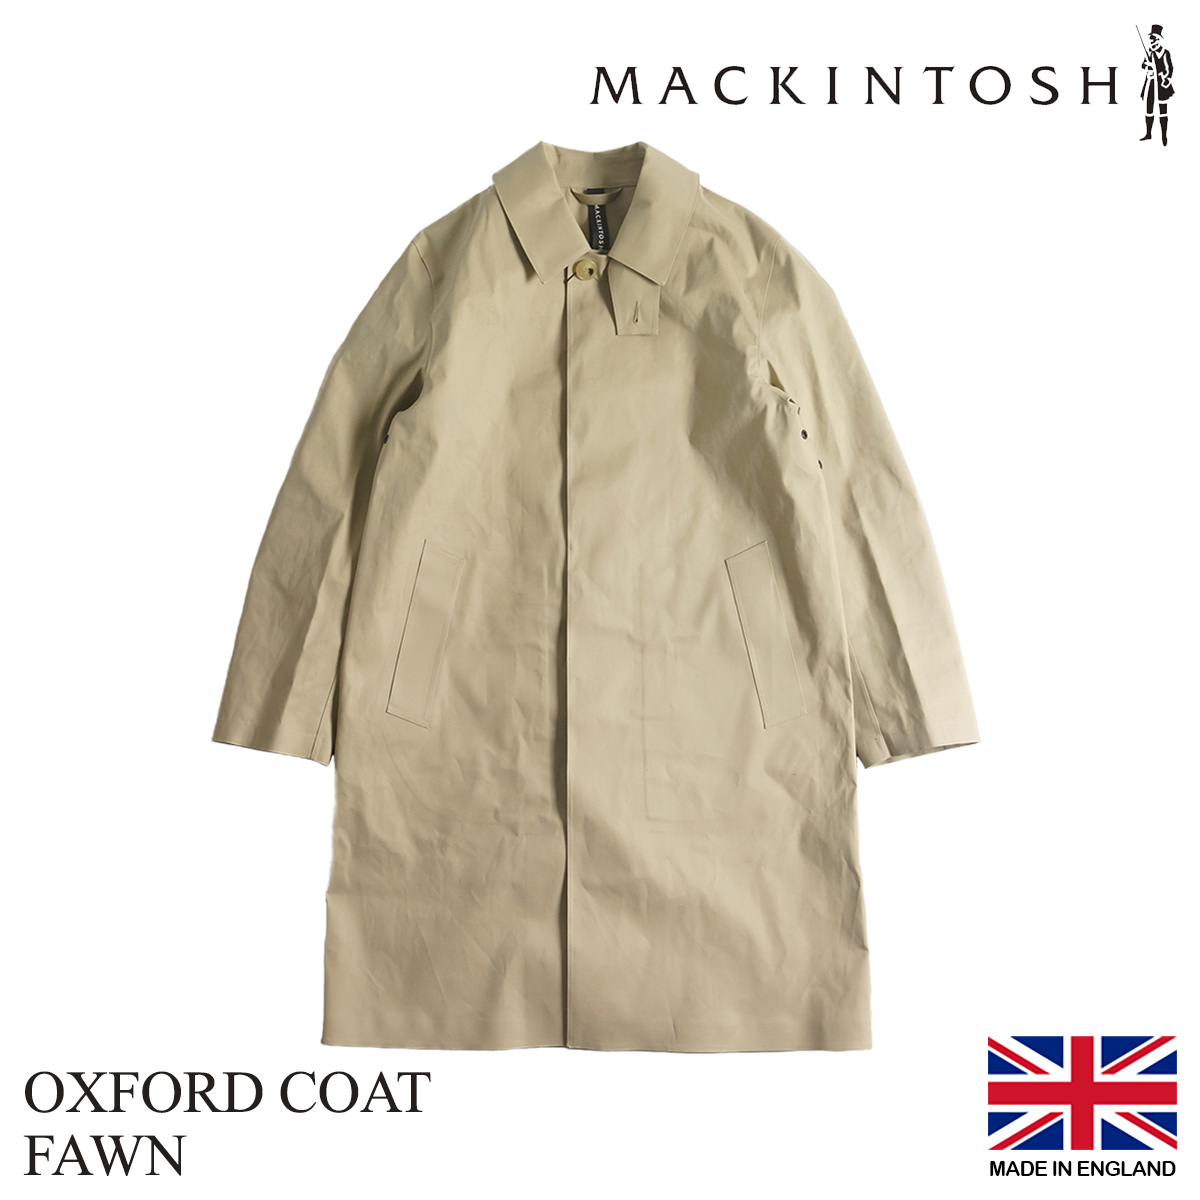 マッキントッシュ MACKINTOSH オックスフォード メンズ 36-44 ゴム引き ステンカラーコート ダンケルド 日本未発売 本国モデル  イギリス製